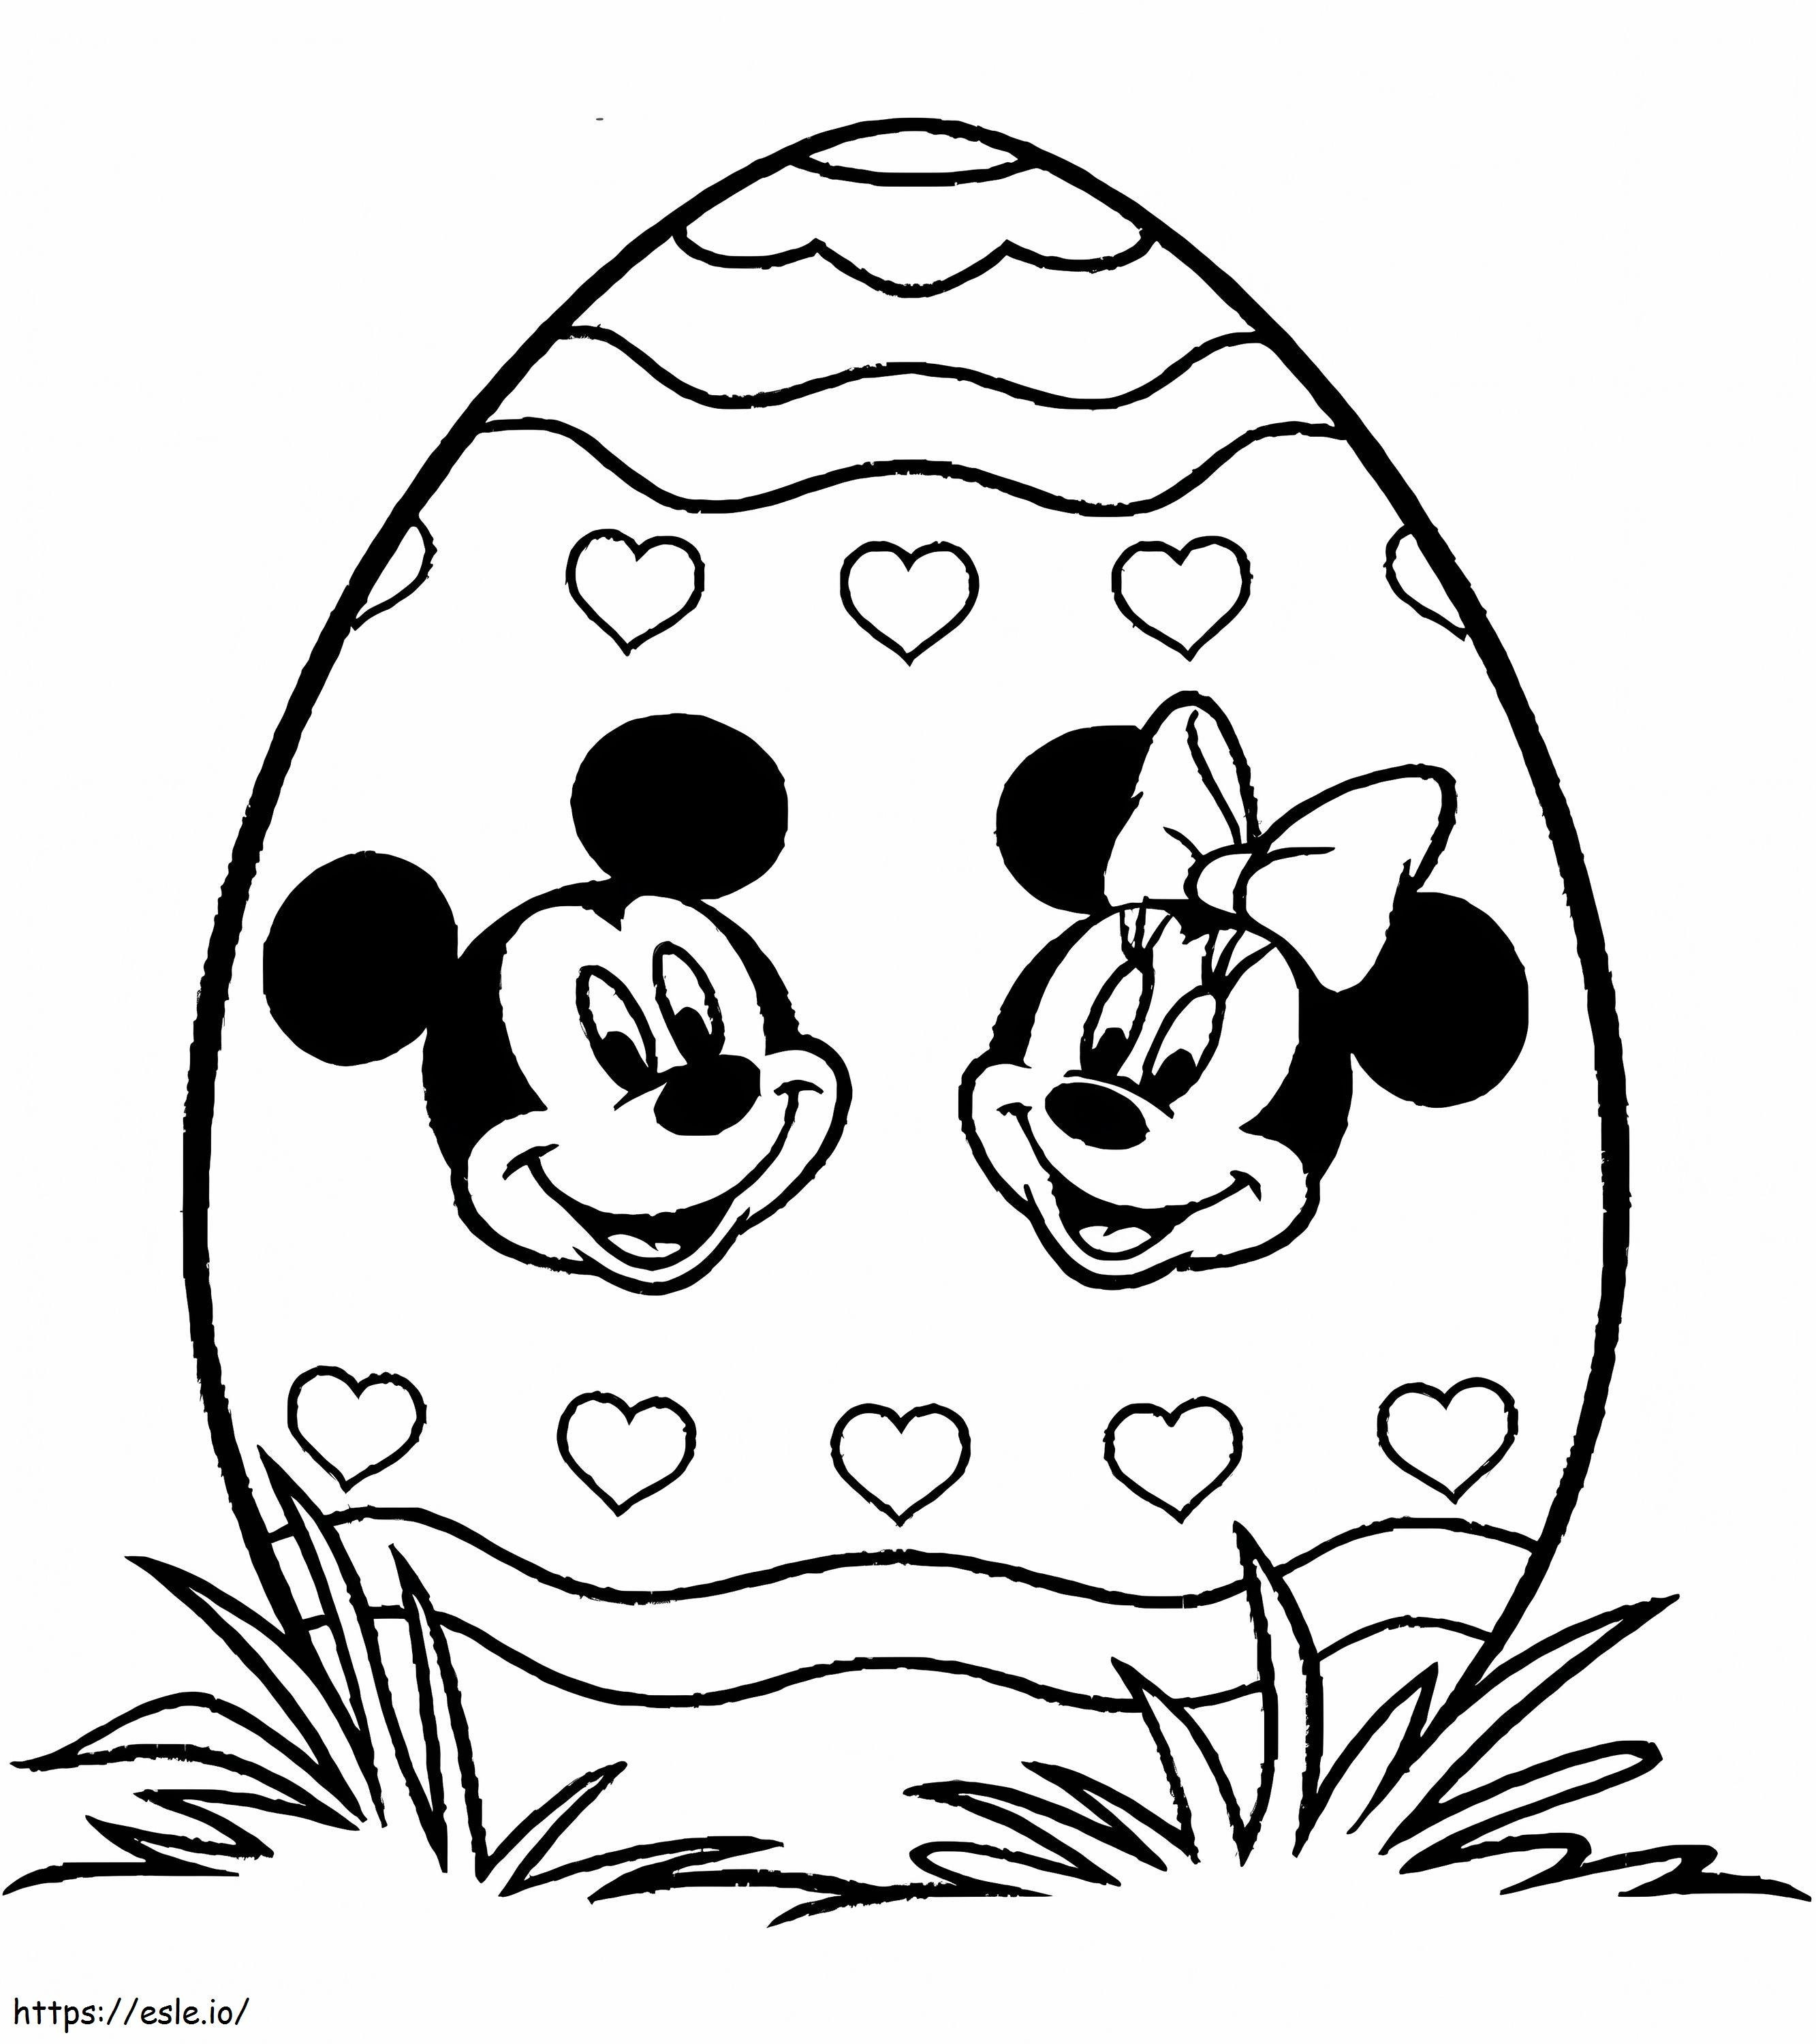 Huevos De Pascua Estampados Con Mickey Mouse Y Minnie Mouse para colorear